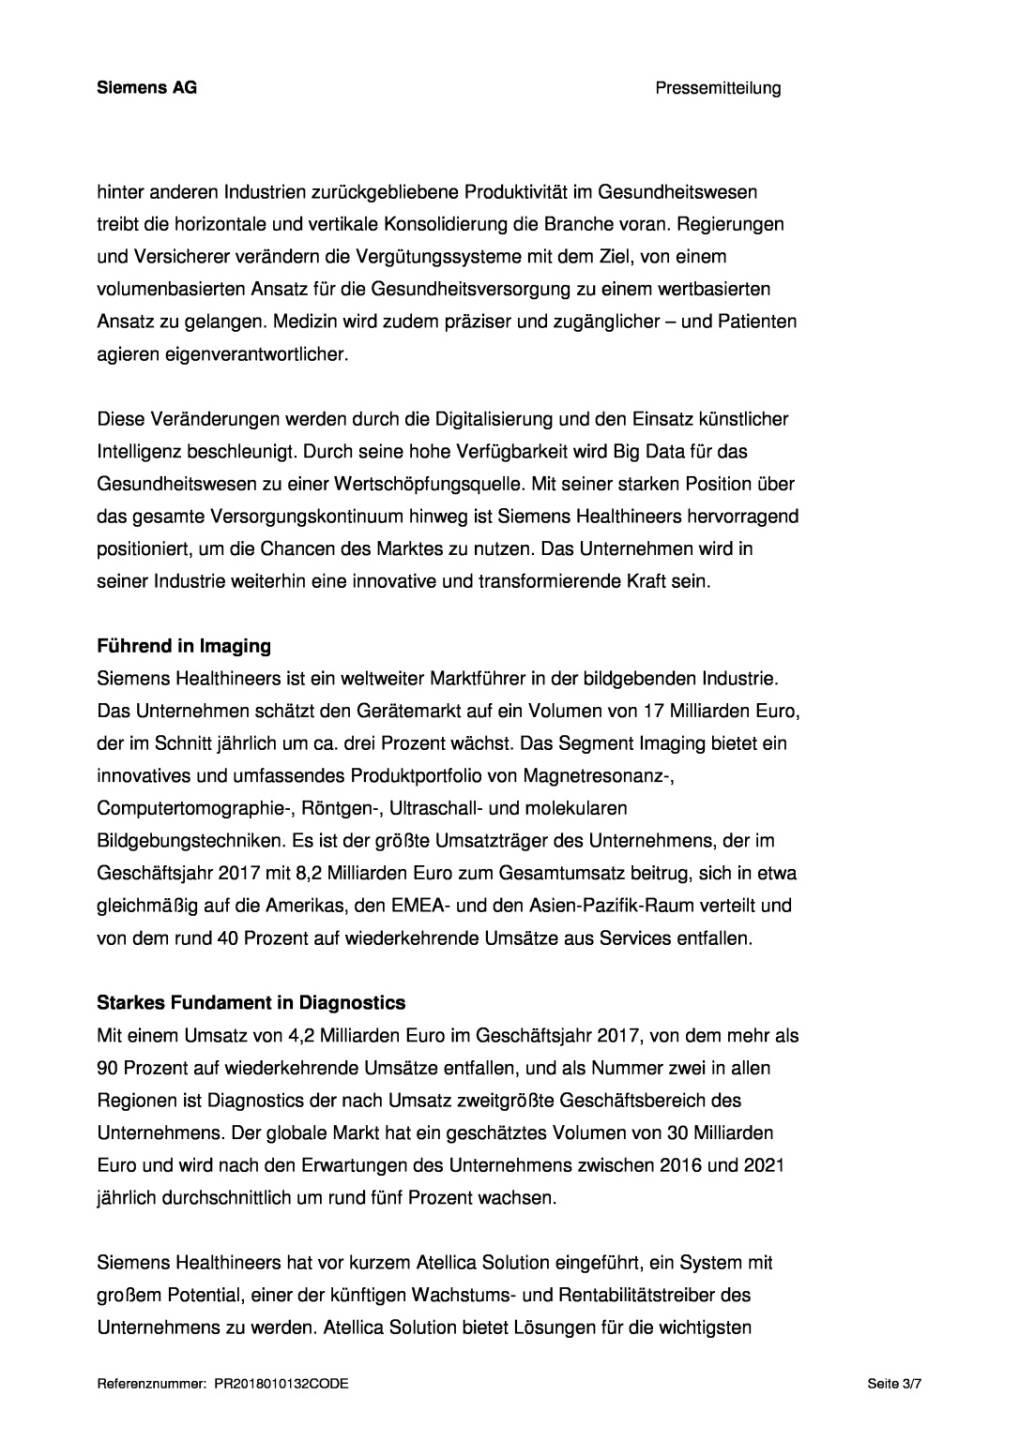 Siemens Healthineers geht an die Börse, Seite 3/7, komplettes Dokument unter http://boerse-social.com/static/uploads/file_2416_siemens_healthineers_geht_an_die_borse.pdf